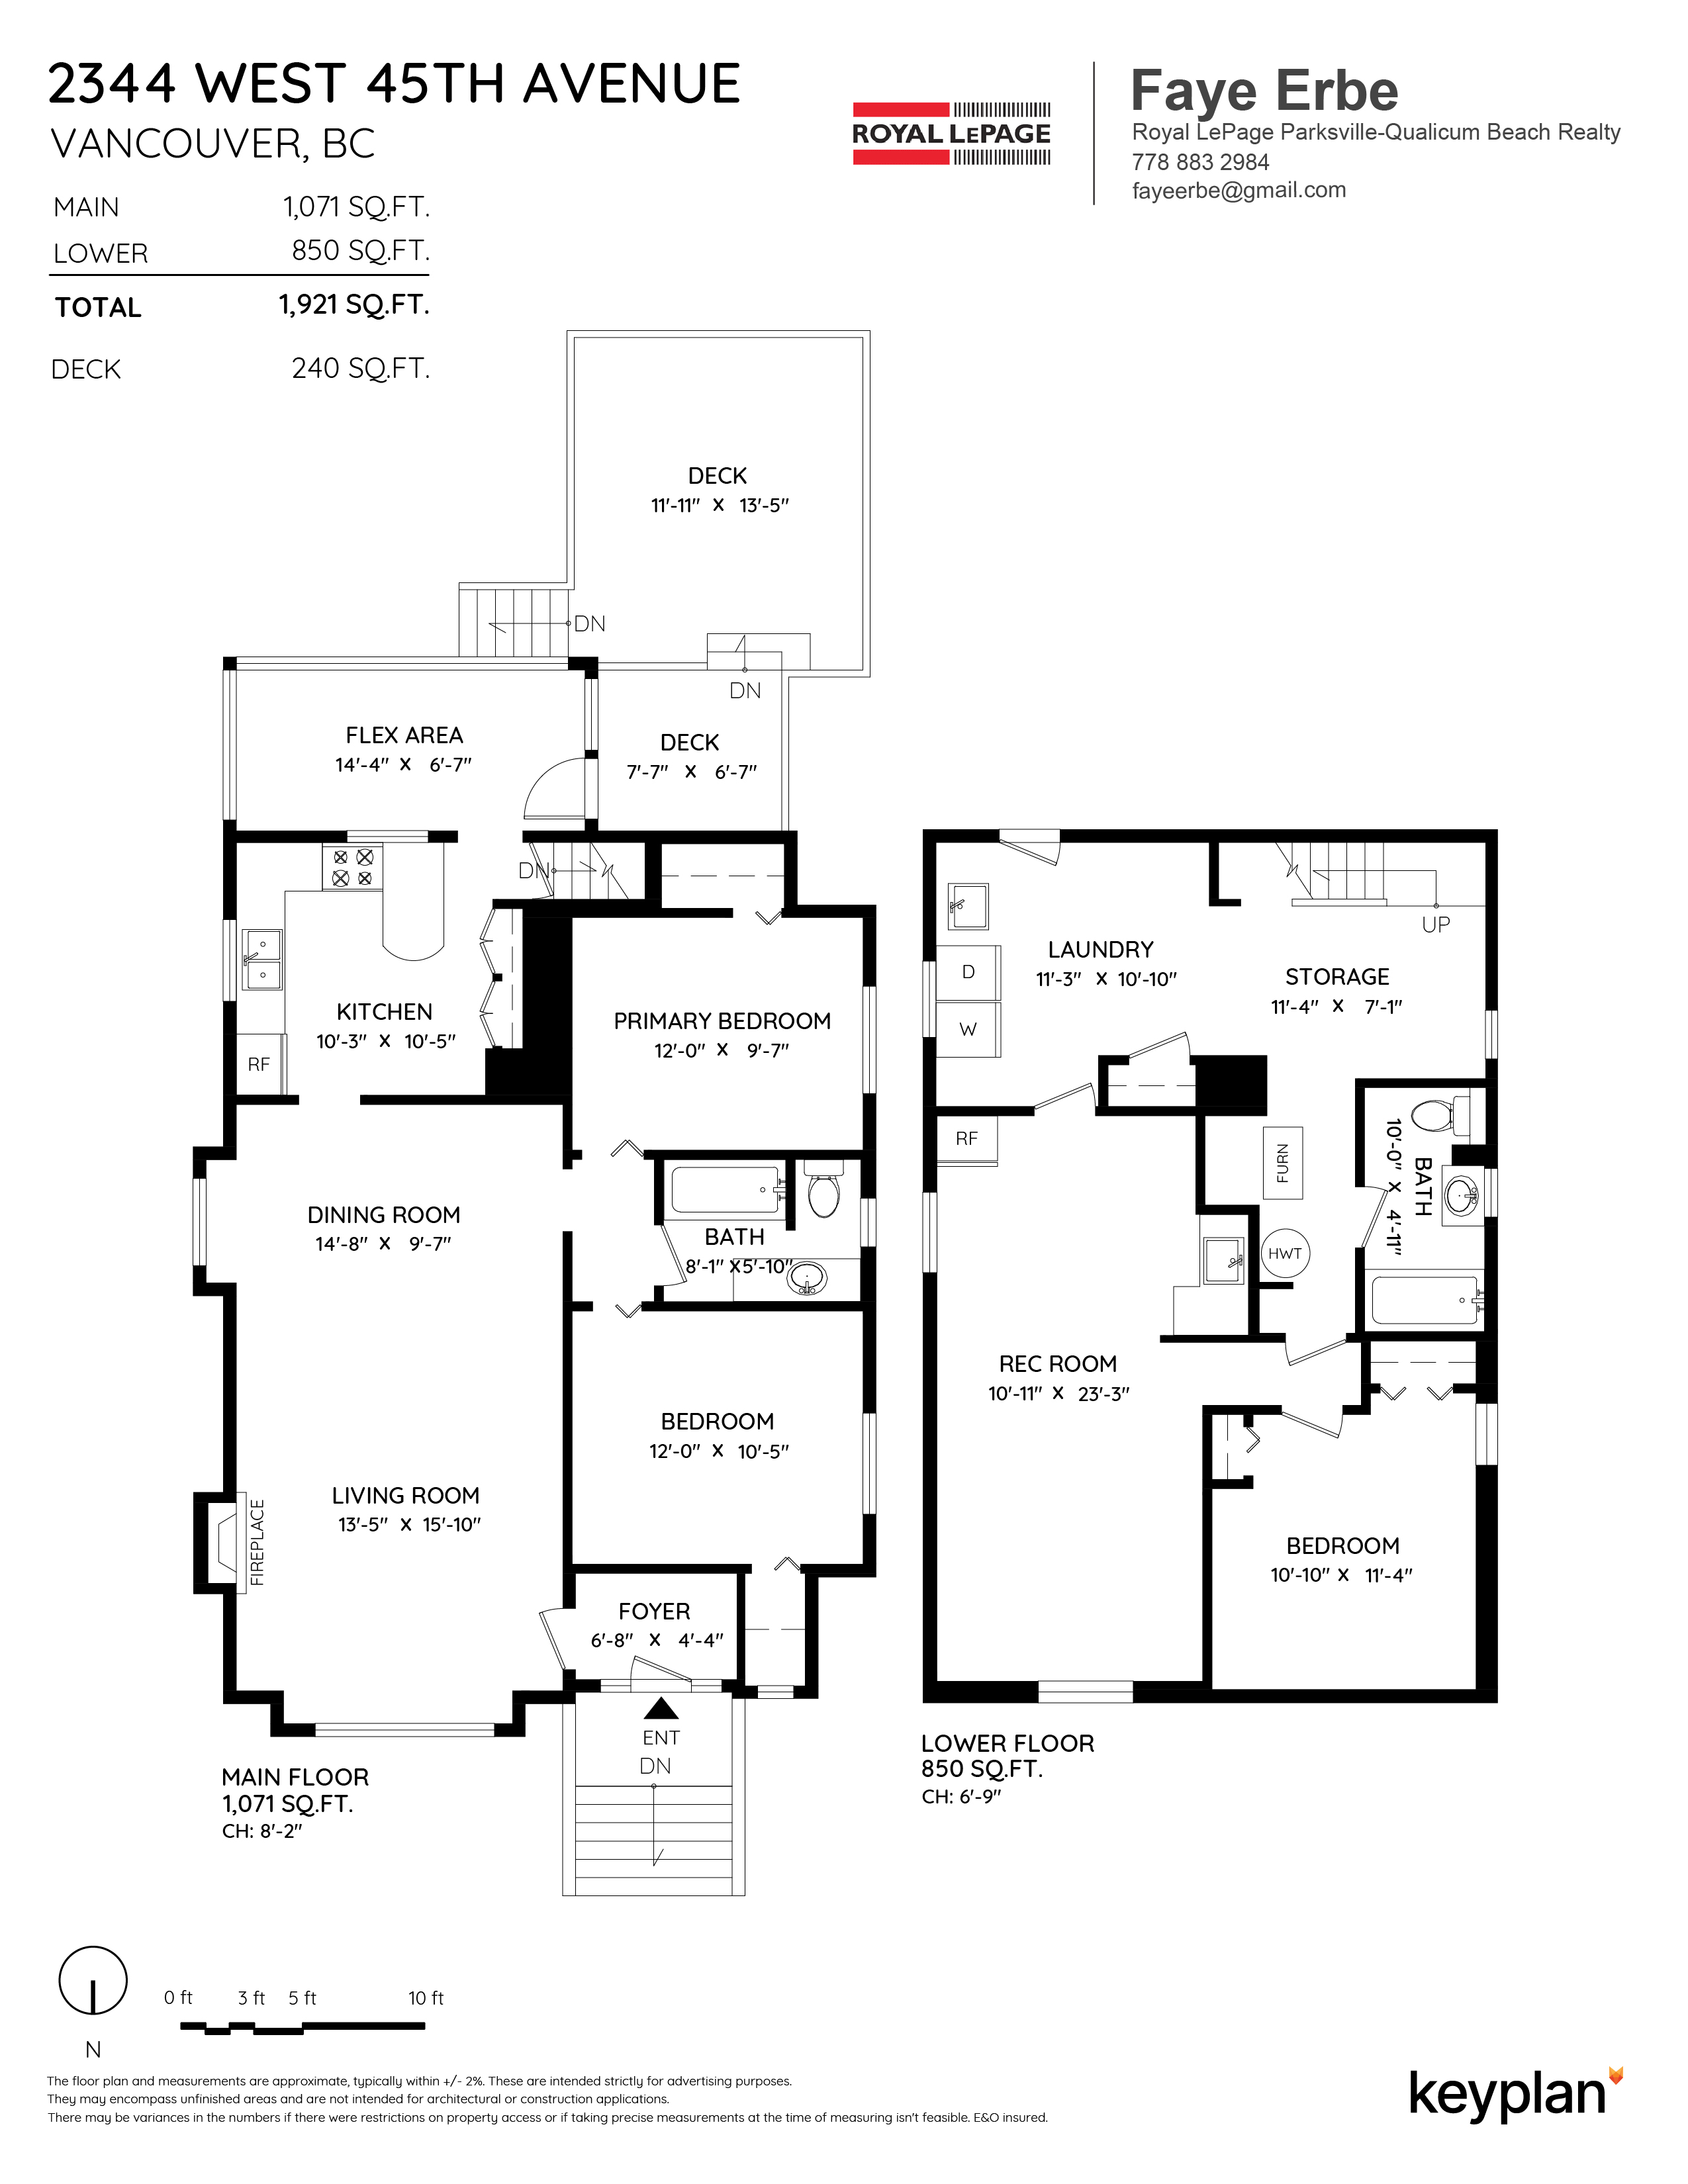 Faye Erbe - 2344 West 45th Avenue, Vancouver, BC, Canada | Floor Plan 1